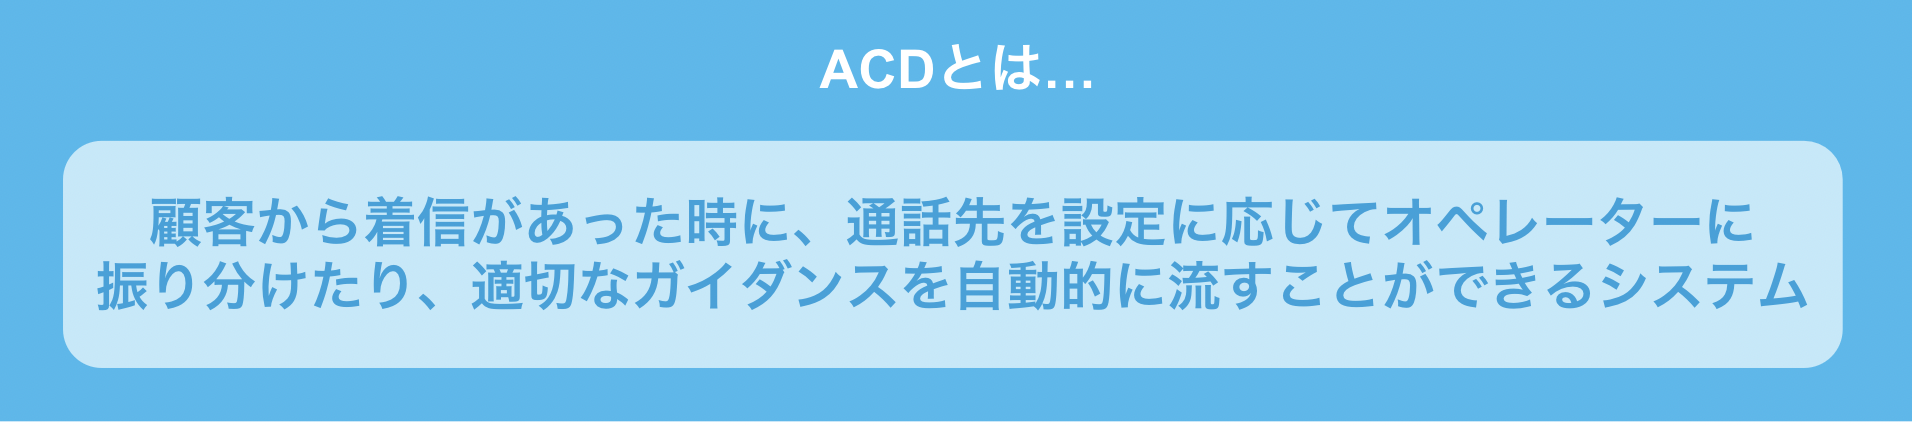 「ACD」とは